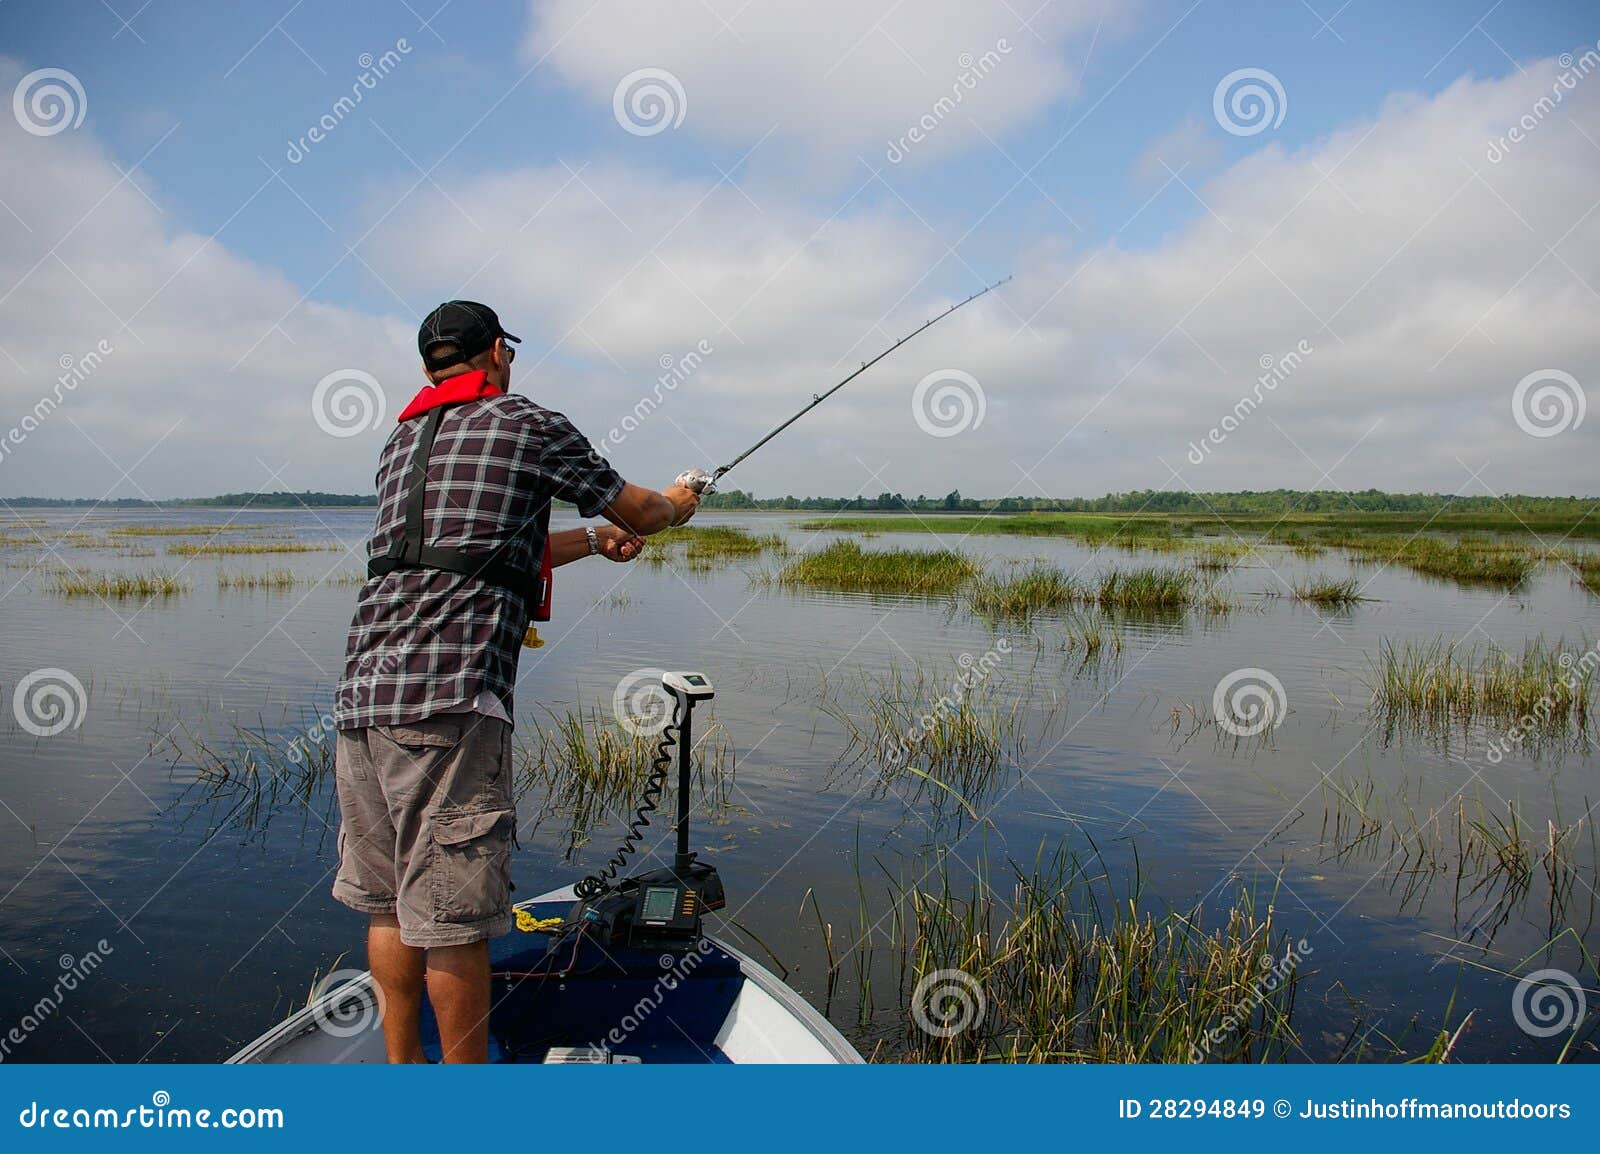 Man Fishing On Lake Royalty Free Stock Images - Image: 28294849